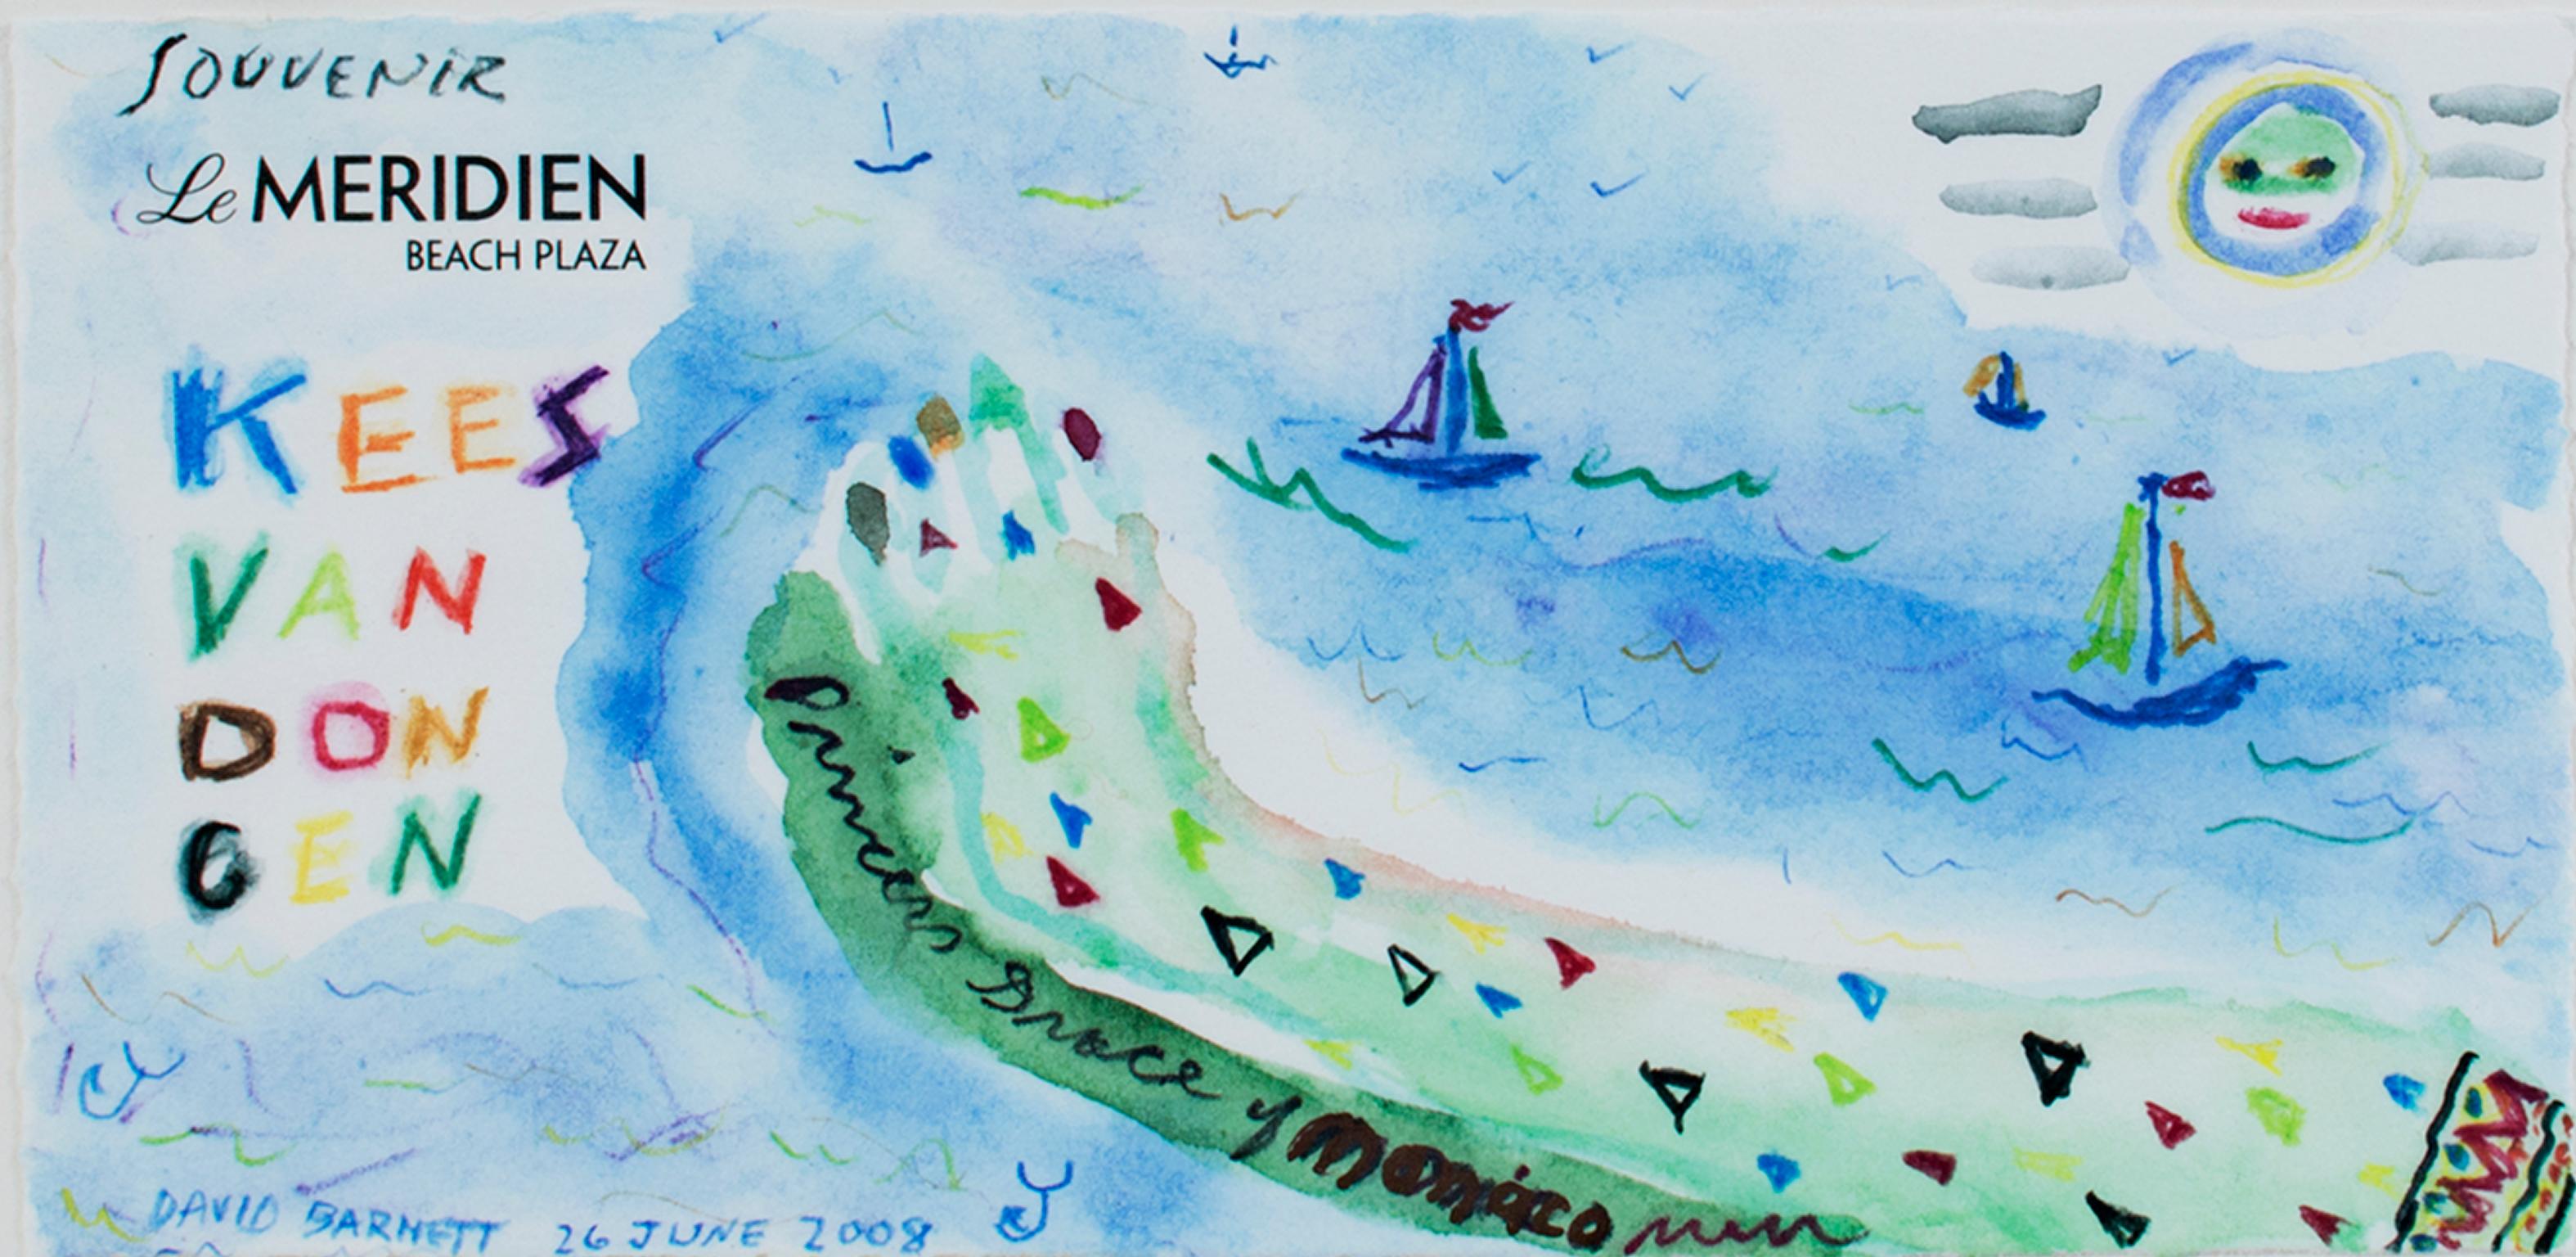 "Hommage à Kees Van Dongen : Souvenir Le Meridien" est une œuvre originale en techniques mixtes de David Barnett, signée en bas à gauche et à droite. Peint sur la station de l'hôtel Le Méridien, il présente une représentation abstraite de la plage